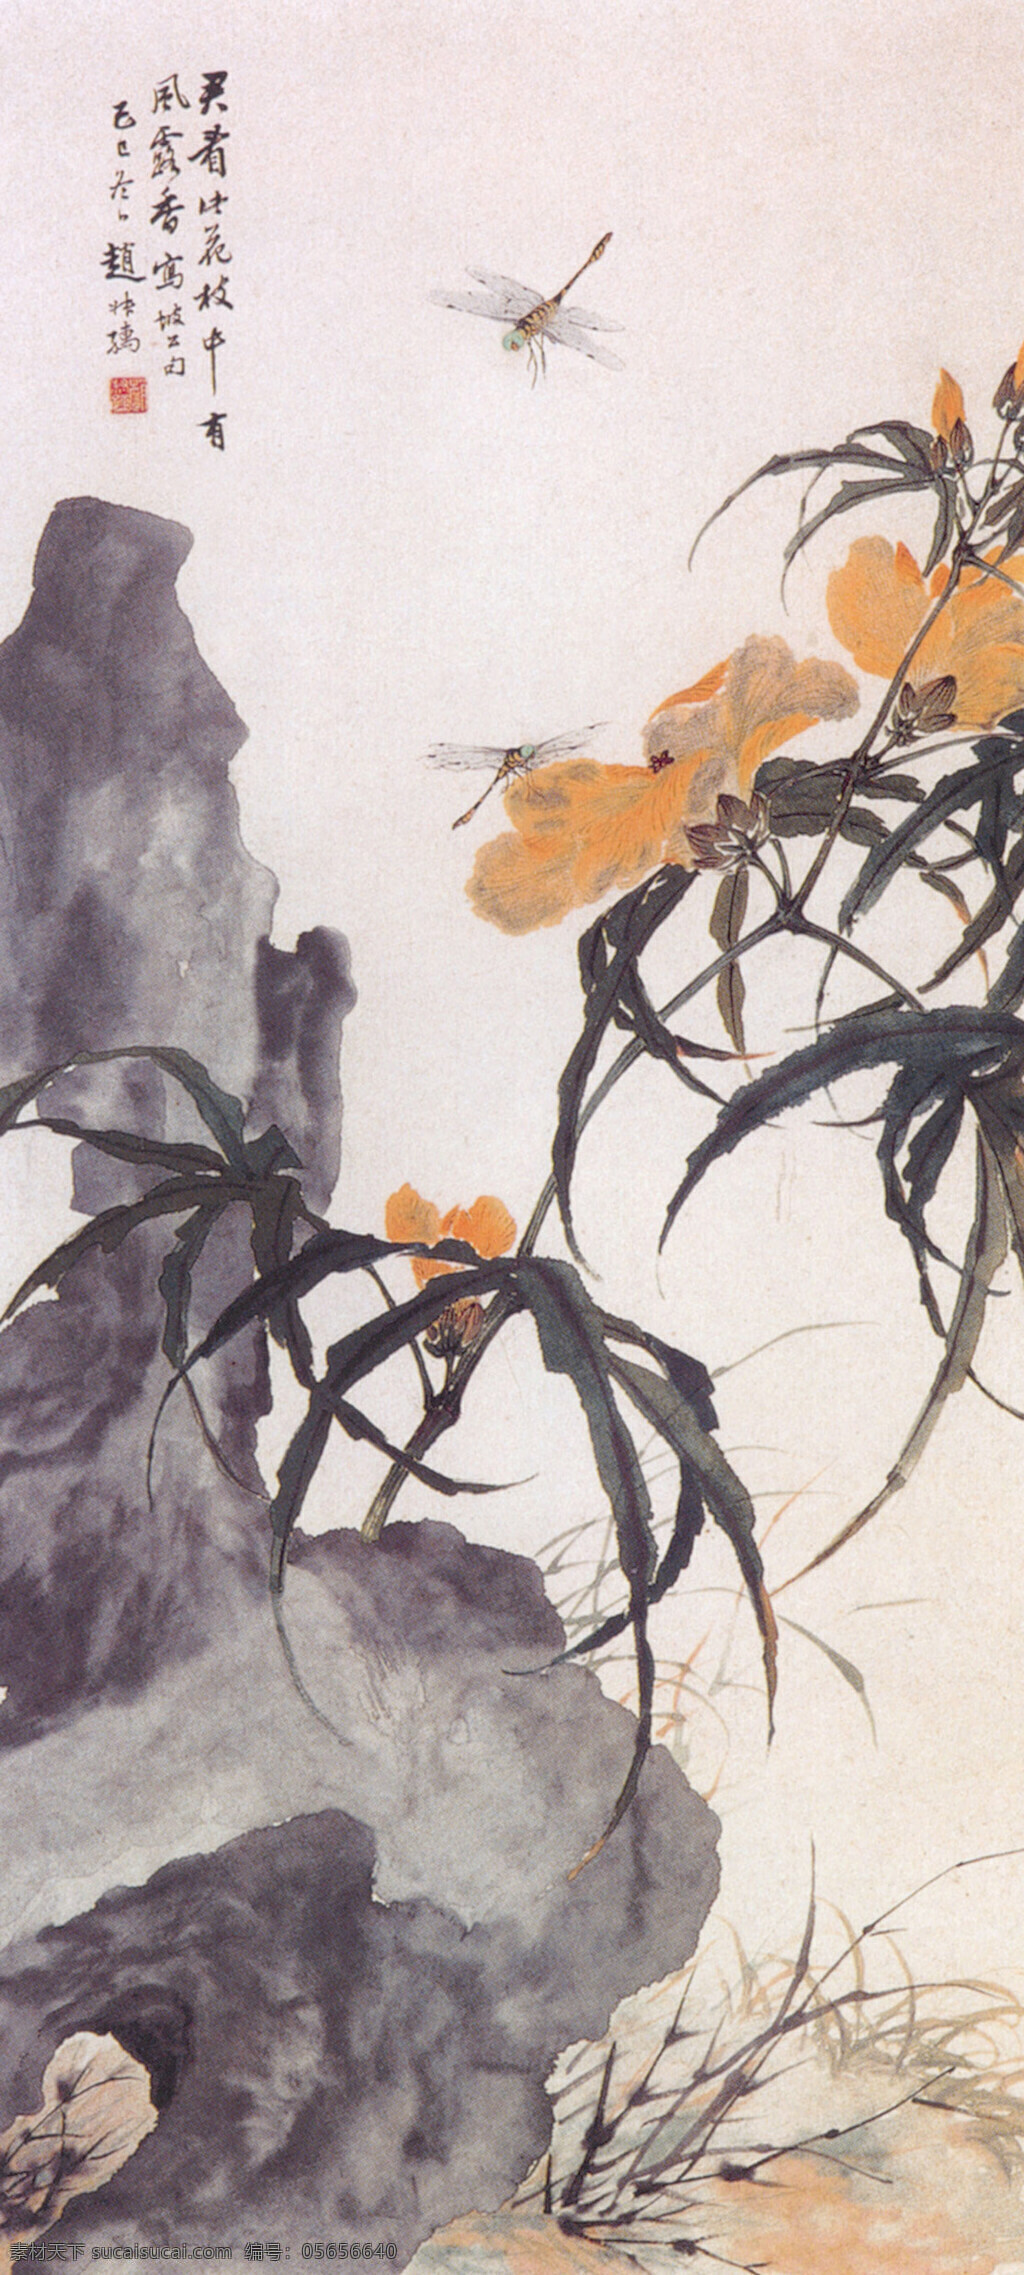 秋葵蜻蜓图 绘画 水墨 蜻蜓 秋葵 假山 中国国画篇 文化艺术 绘画书法